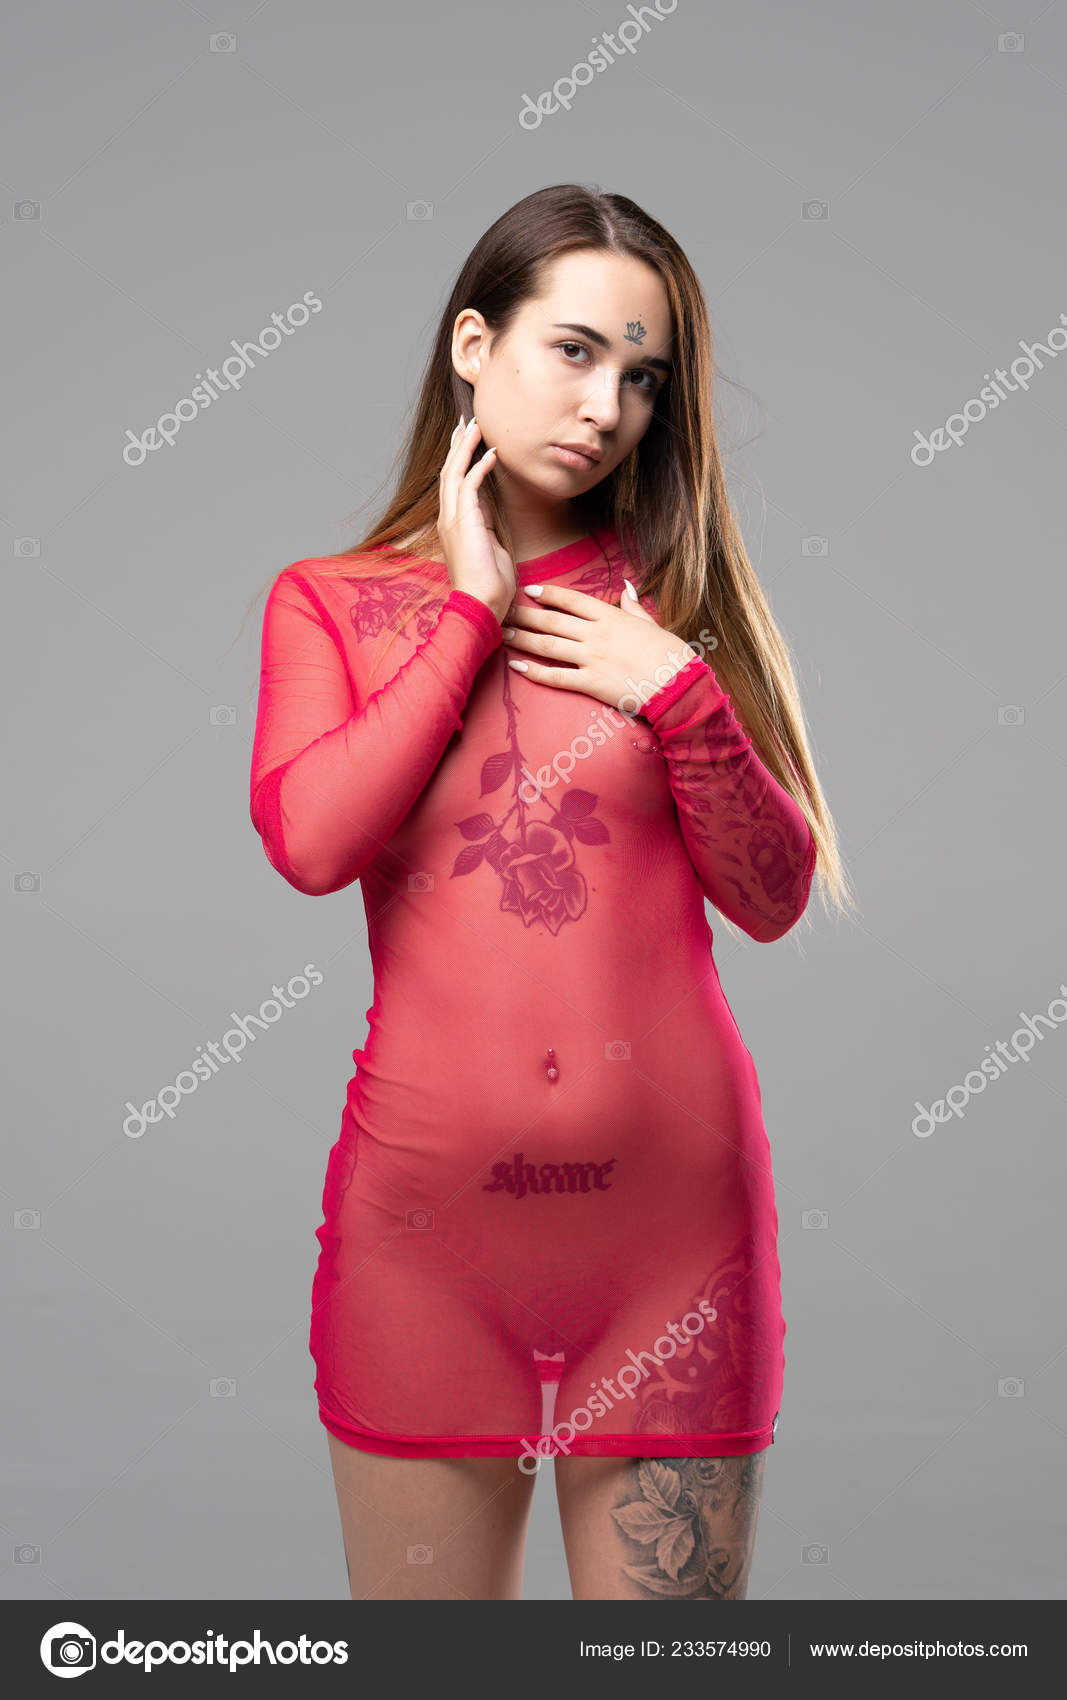 https://st4n.depositphotos.com/10086424/23357/i/1600/depositphotos_233574990-stock-photo-young-beautiful-girl-posing-nude.jpg